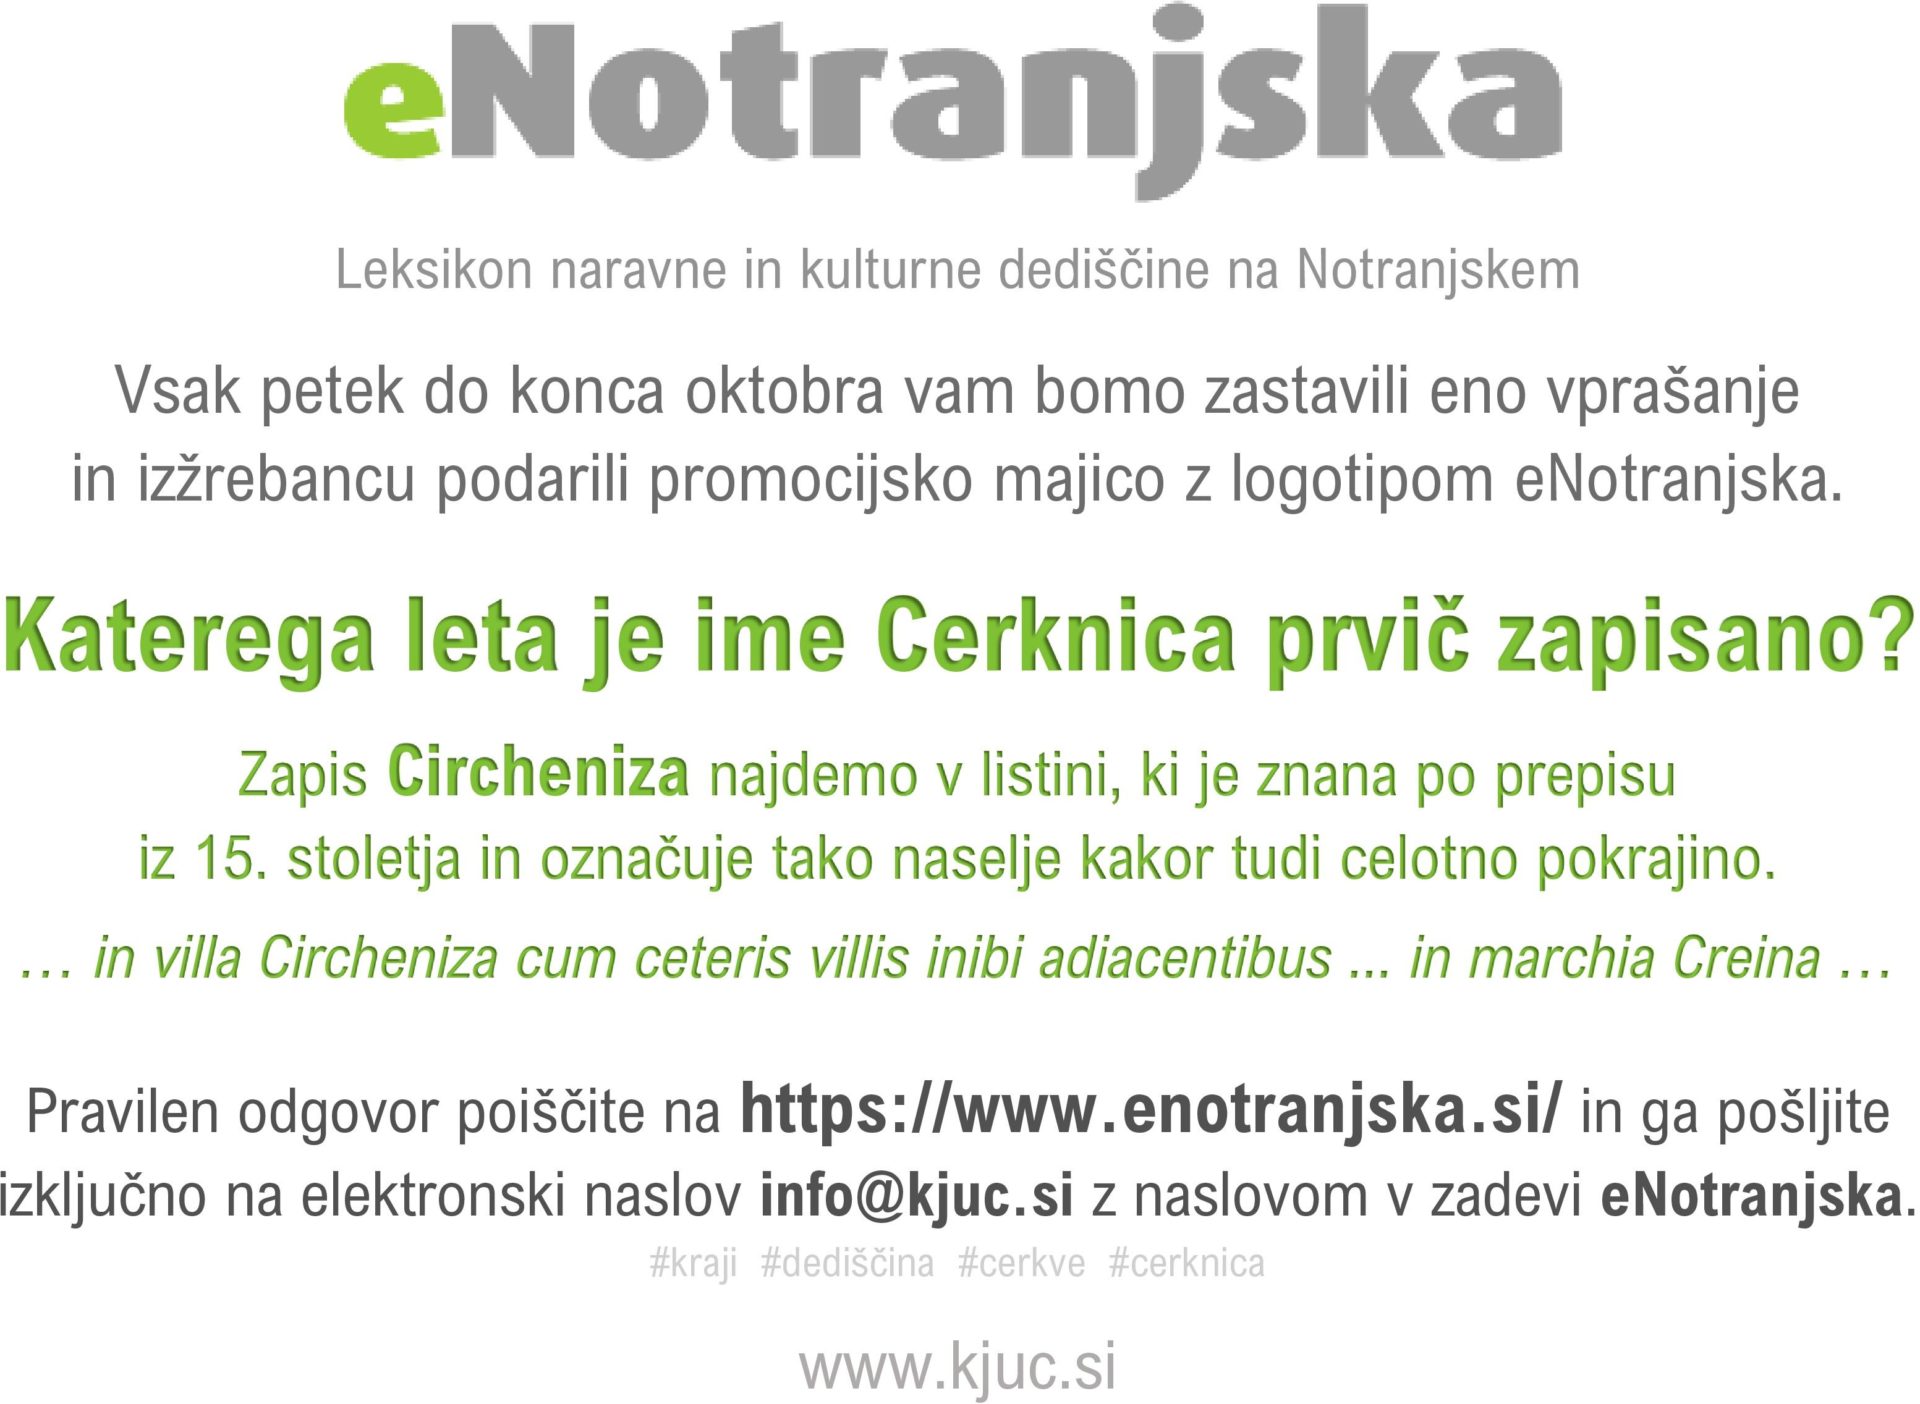 1 Leksikon naravne in kulturne dediscine na Notranjskem page 001 - Nagradna igra eNotranjska